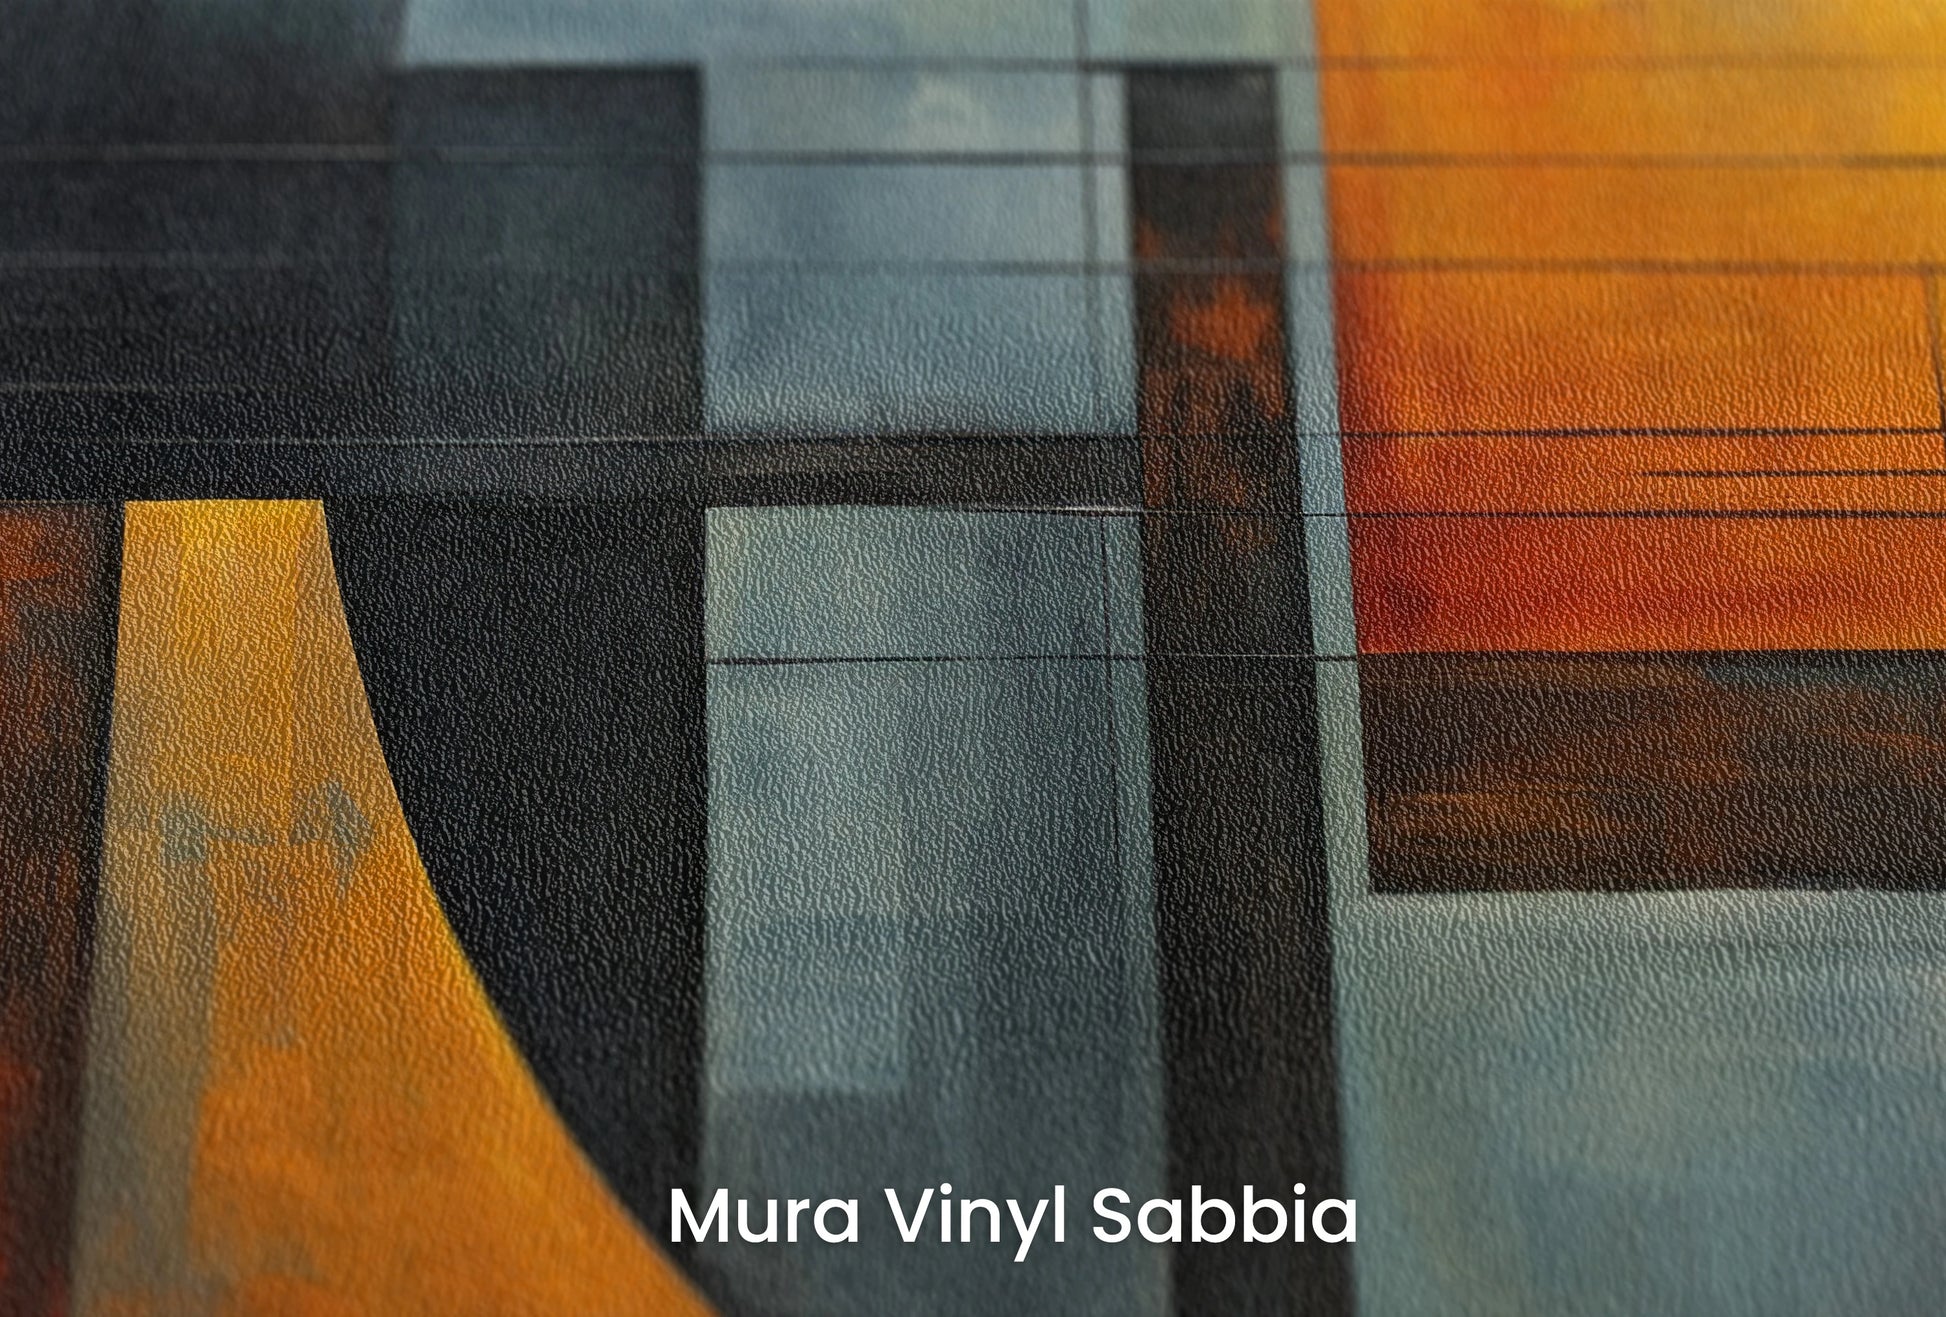 Zbliżenie na artystyczną fototapetę o nazwie Abstract Lunar na podłożu Mura Vinyl Sabbia struktura grubego ziarna piasku.